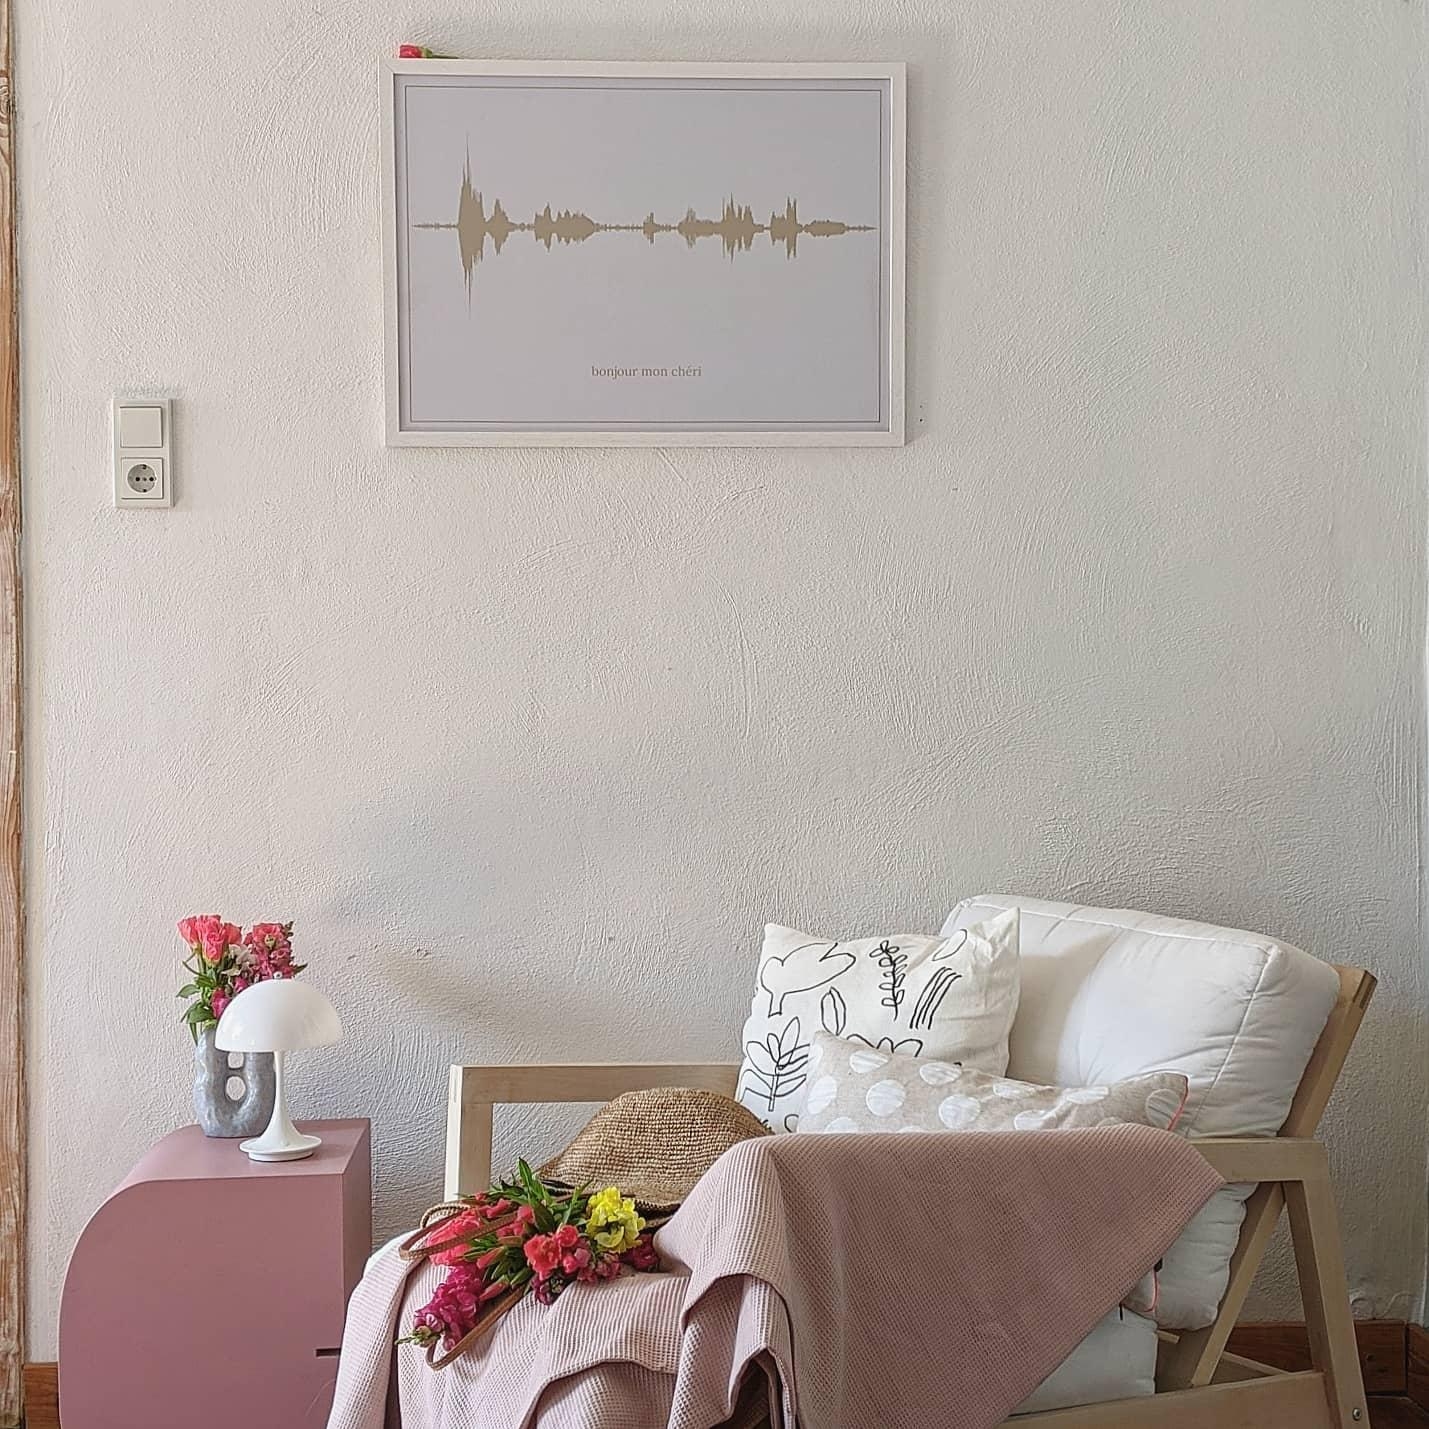 #posterdesign #homestory #altbau #couchstyle #scandinavisch #wanddeco #hygge #interior #interiør 